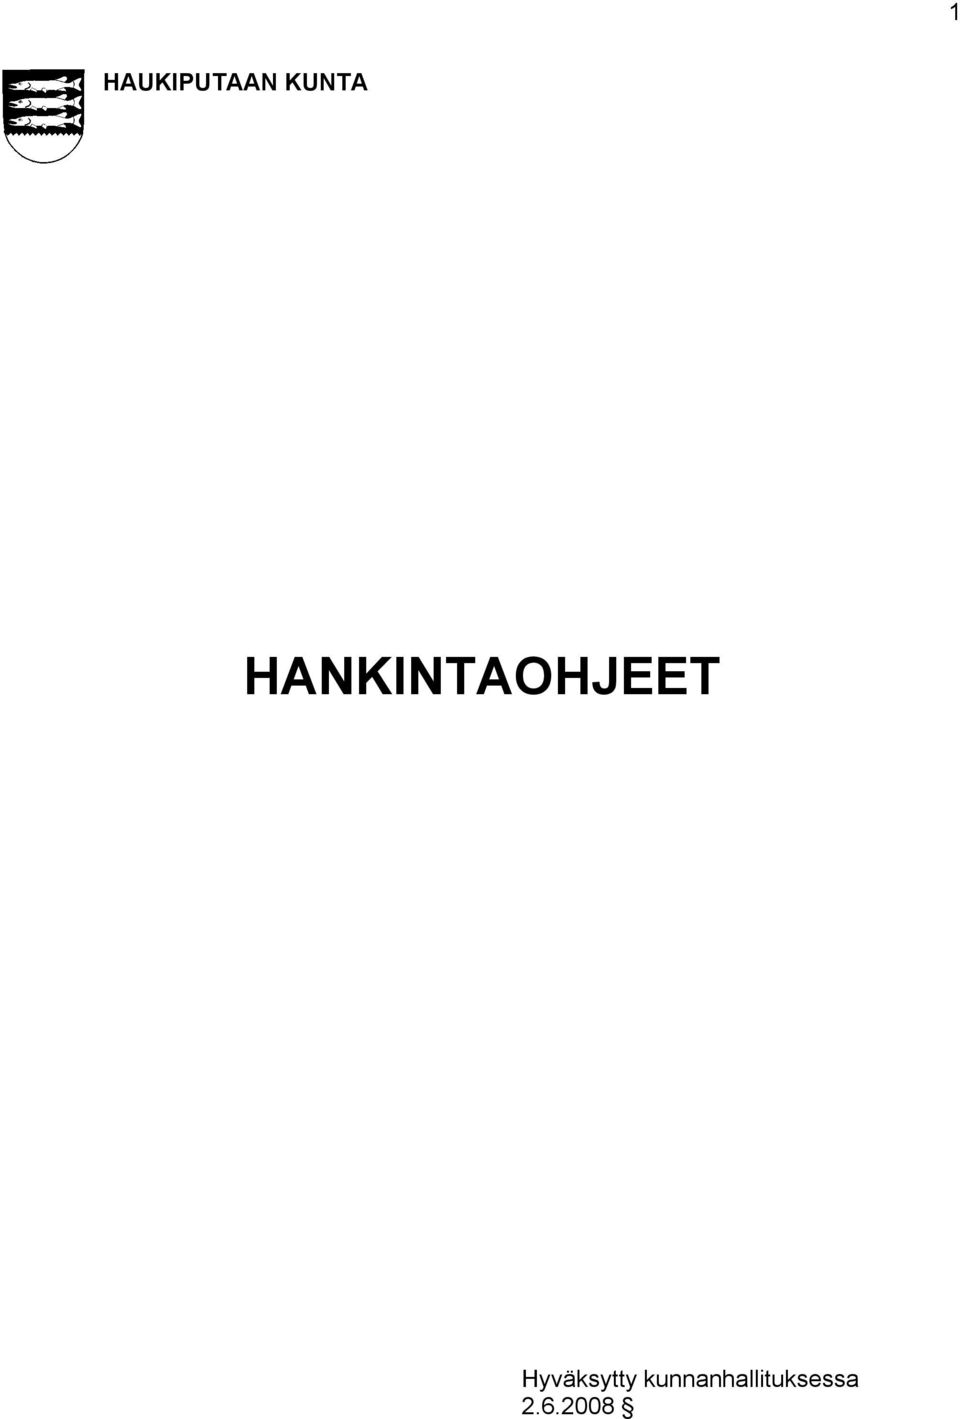 HANKINTAOHJEET